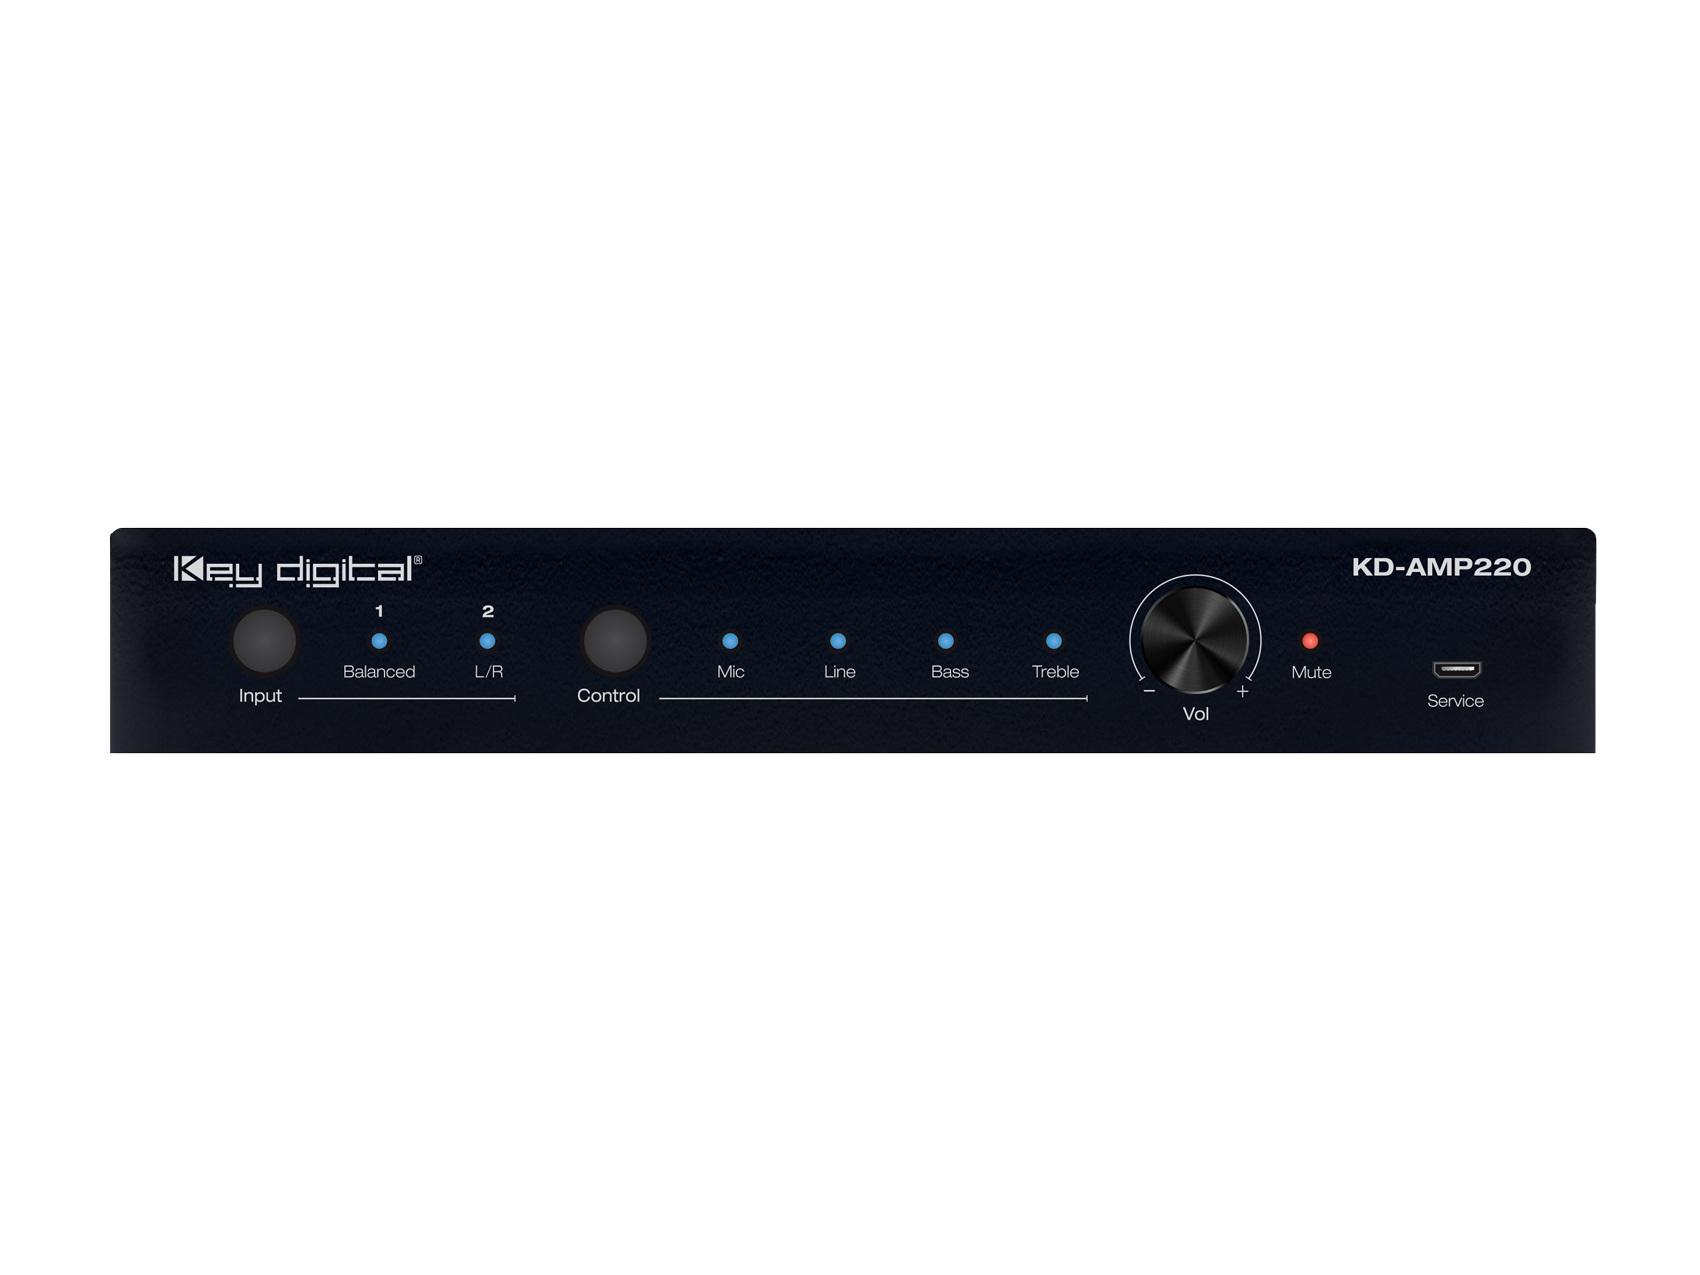 KD-AMP220 2 Channel 20 Watt Per Channel Compact Digital Amplifier by Key Digital